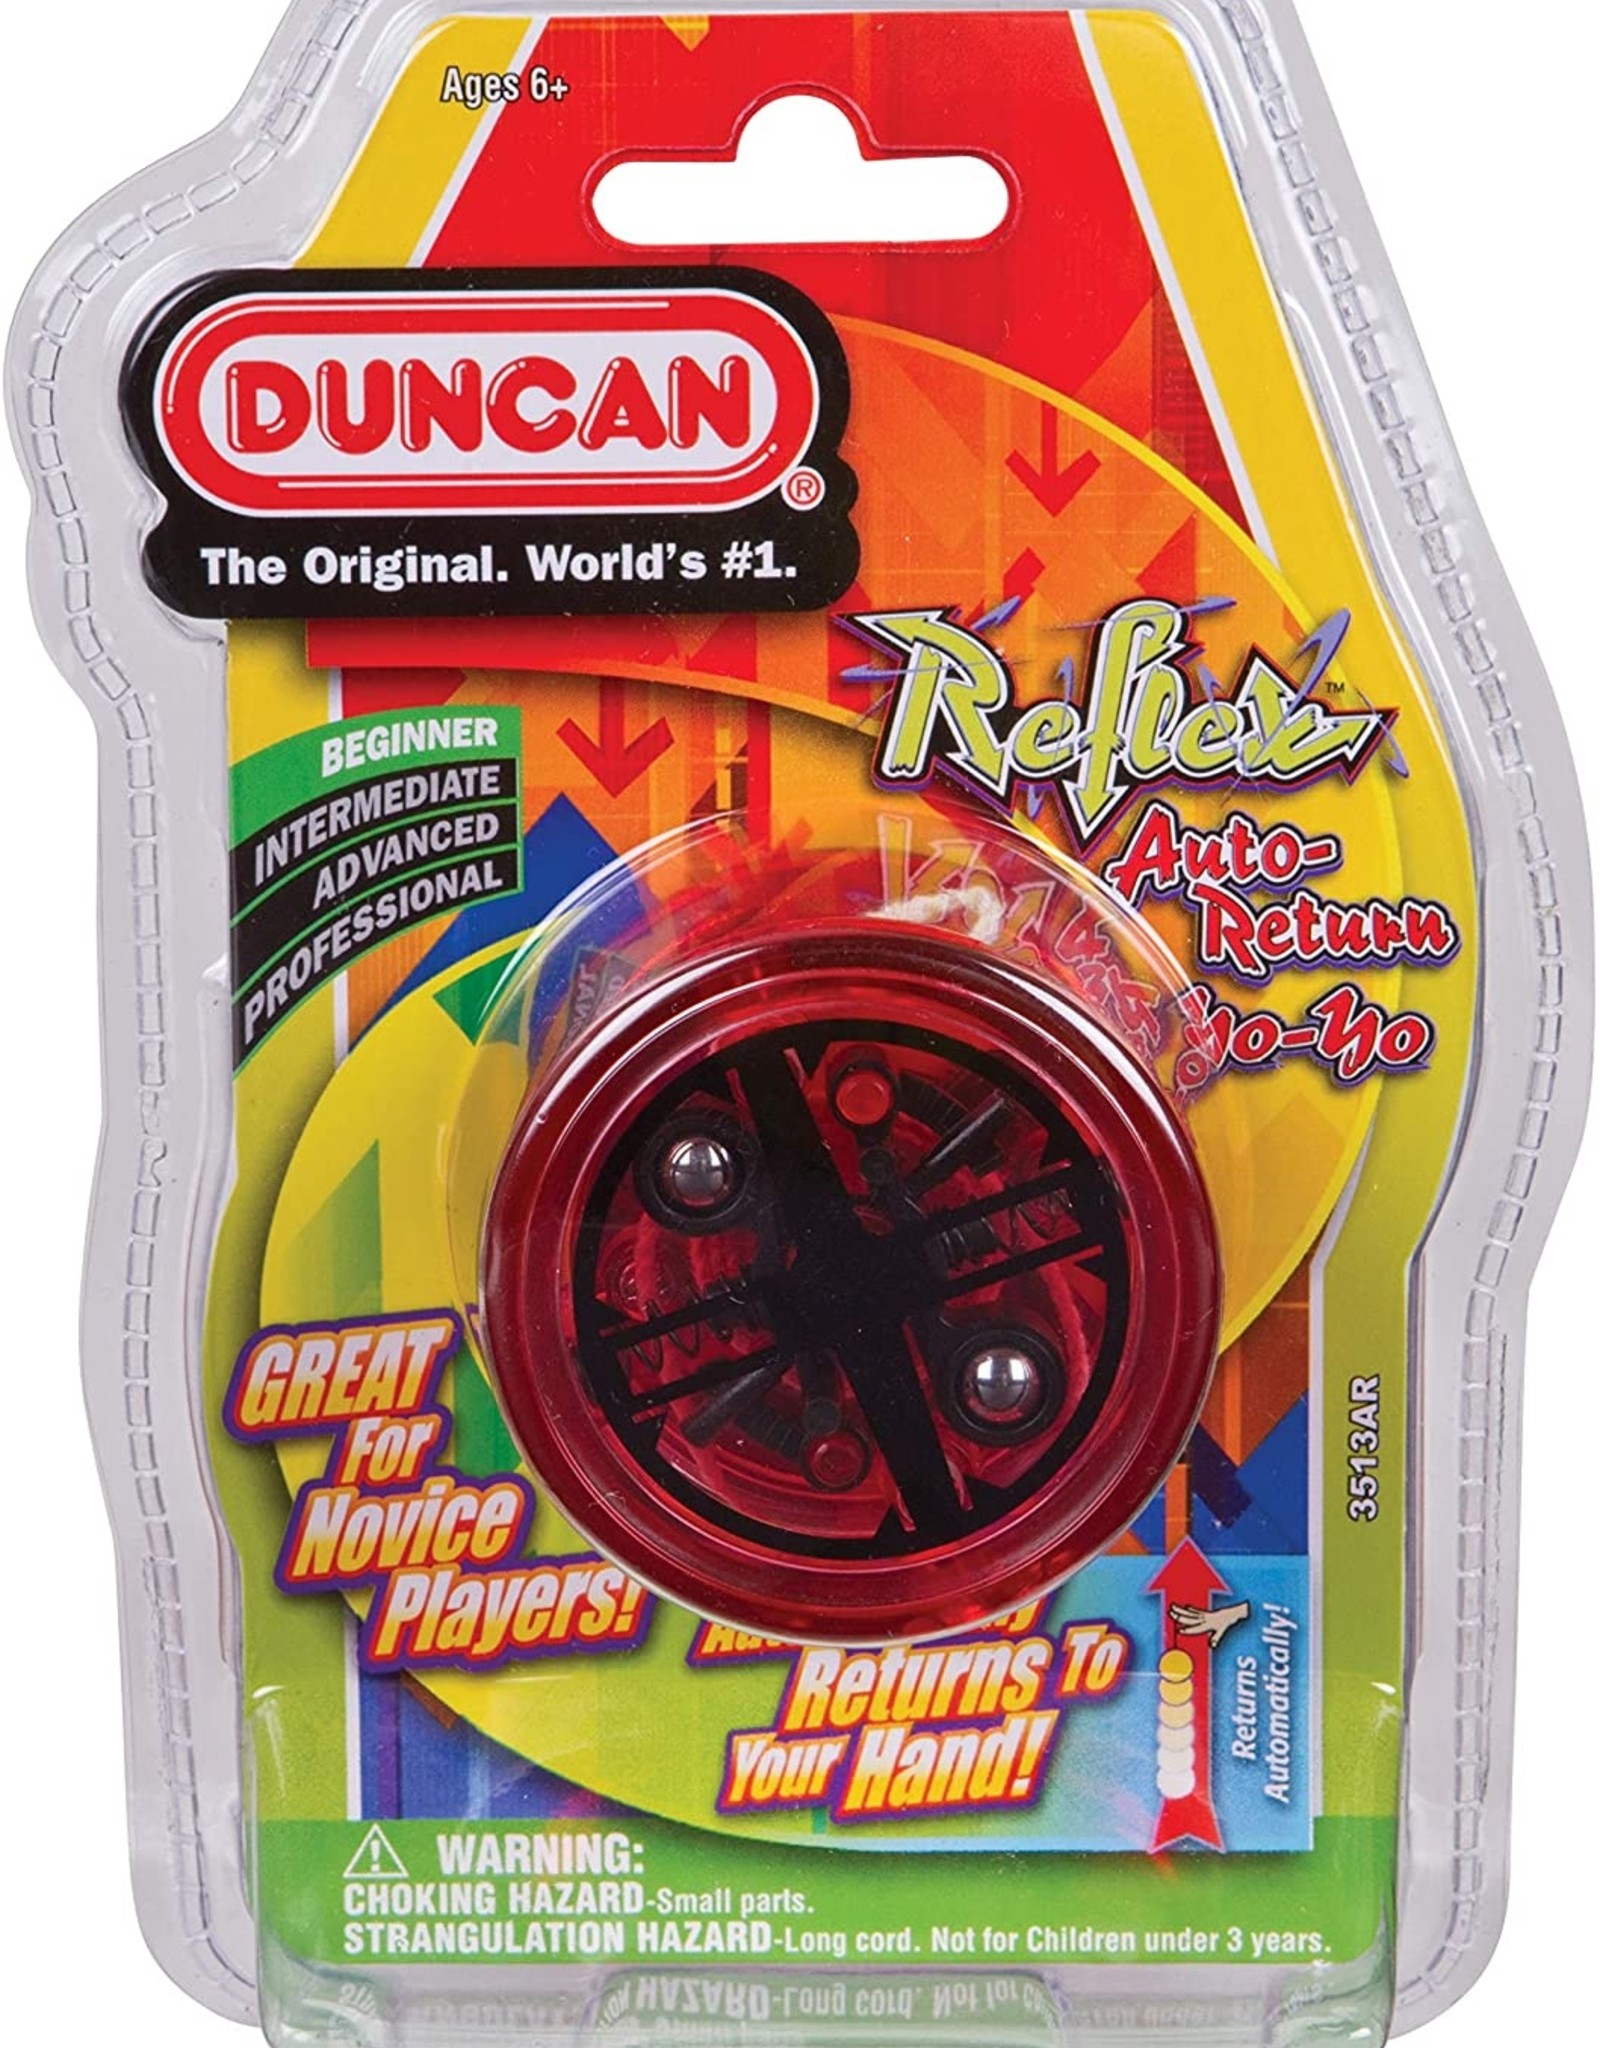 Duncan Reflex Auto Return Yo-Yo